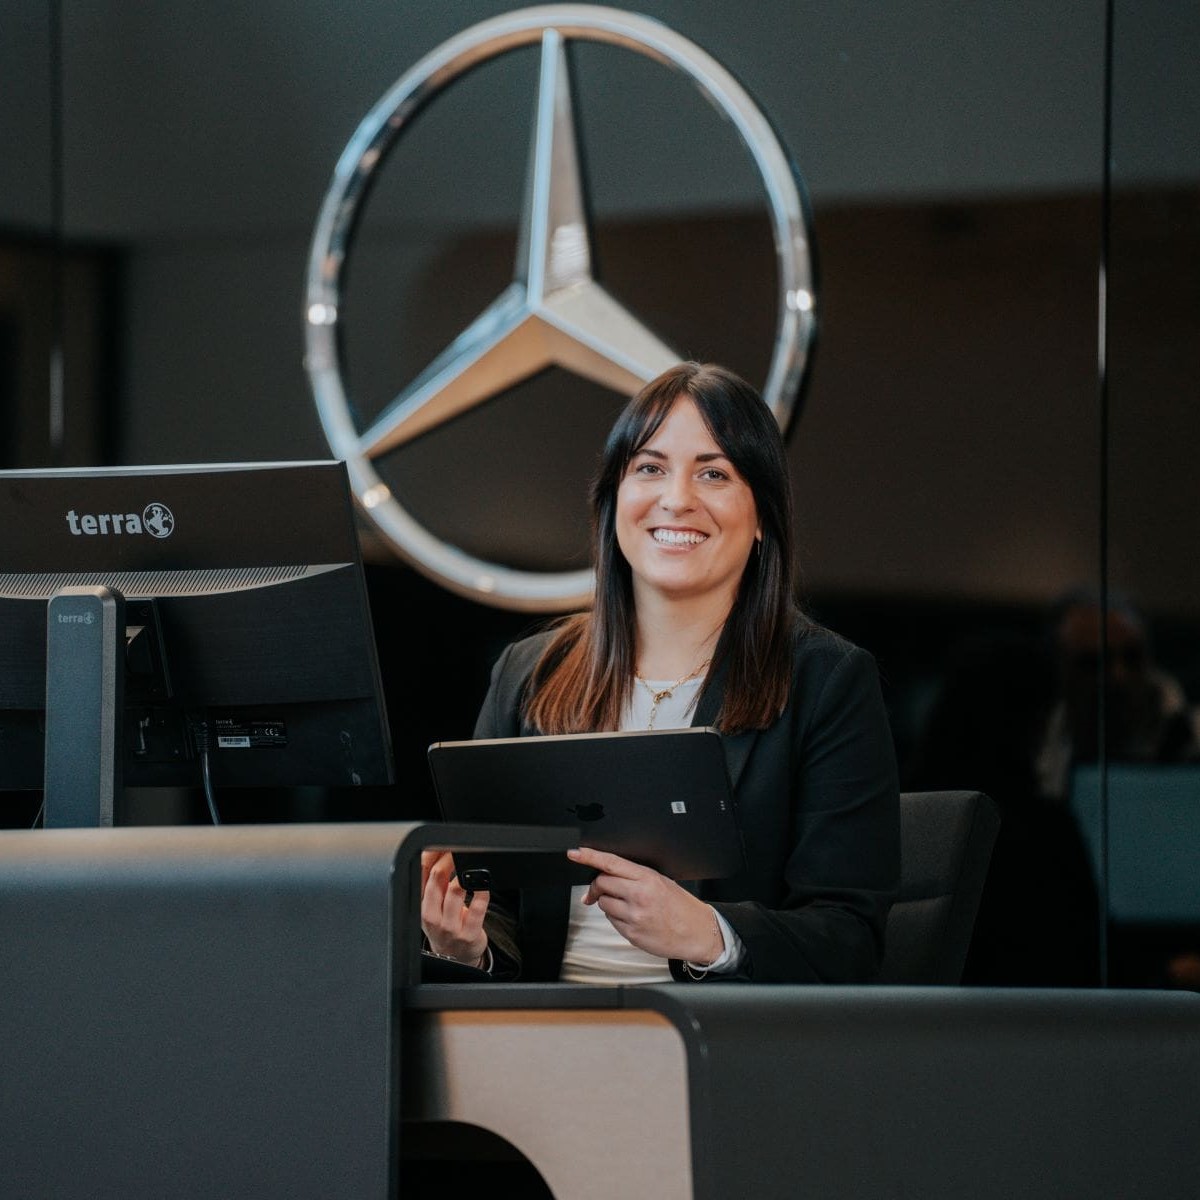 Serviceassistentin bei Mercedes-Benz in Wiesbaden.